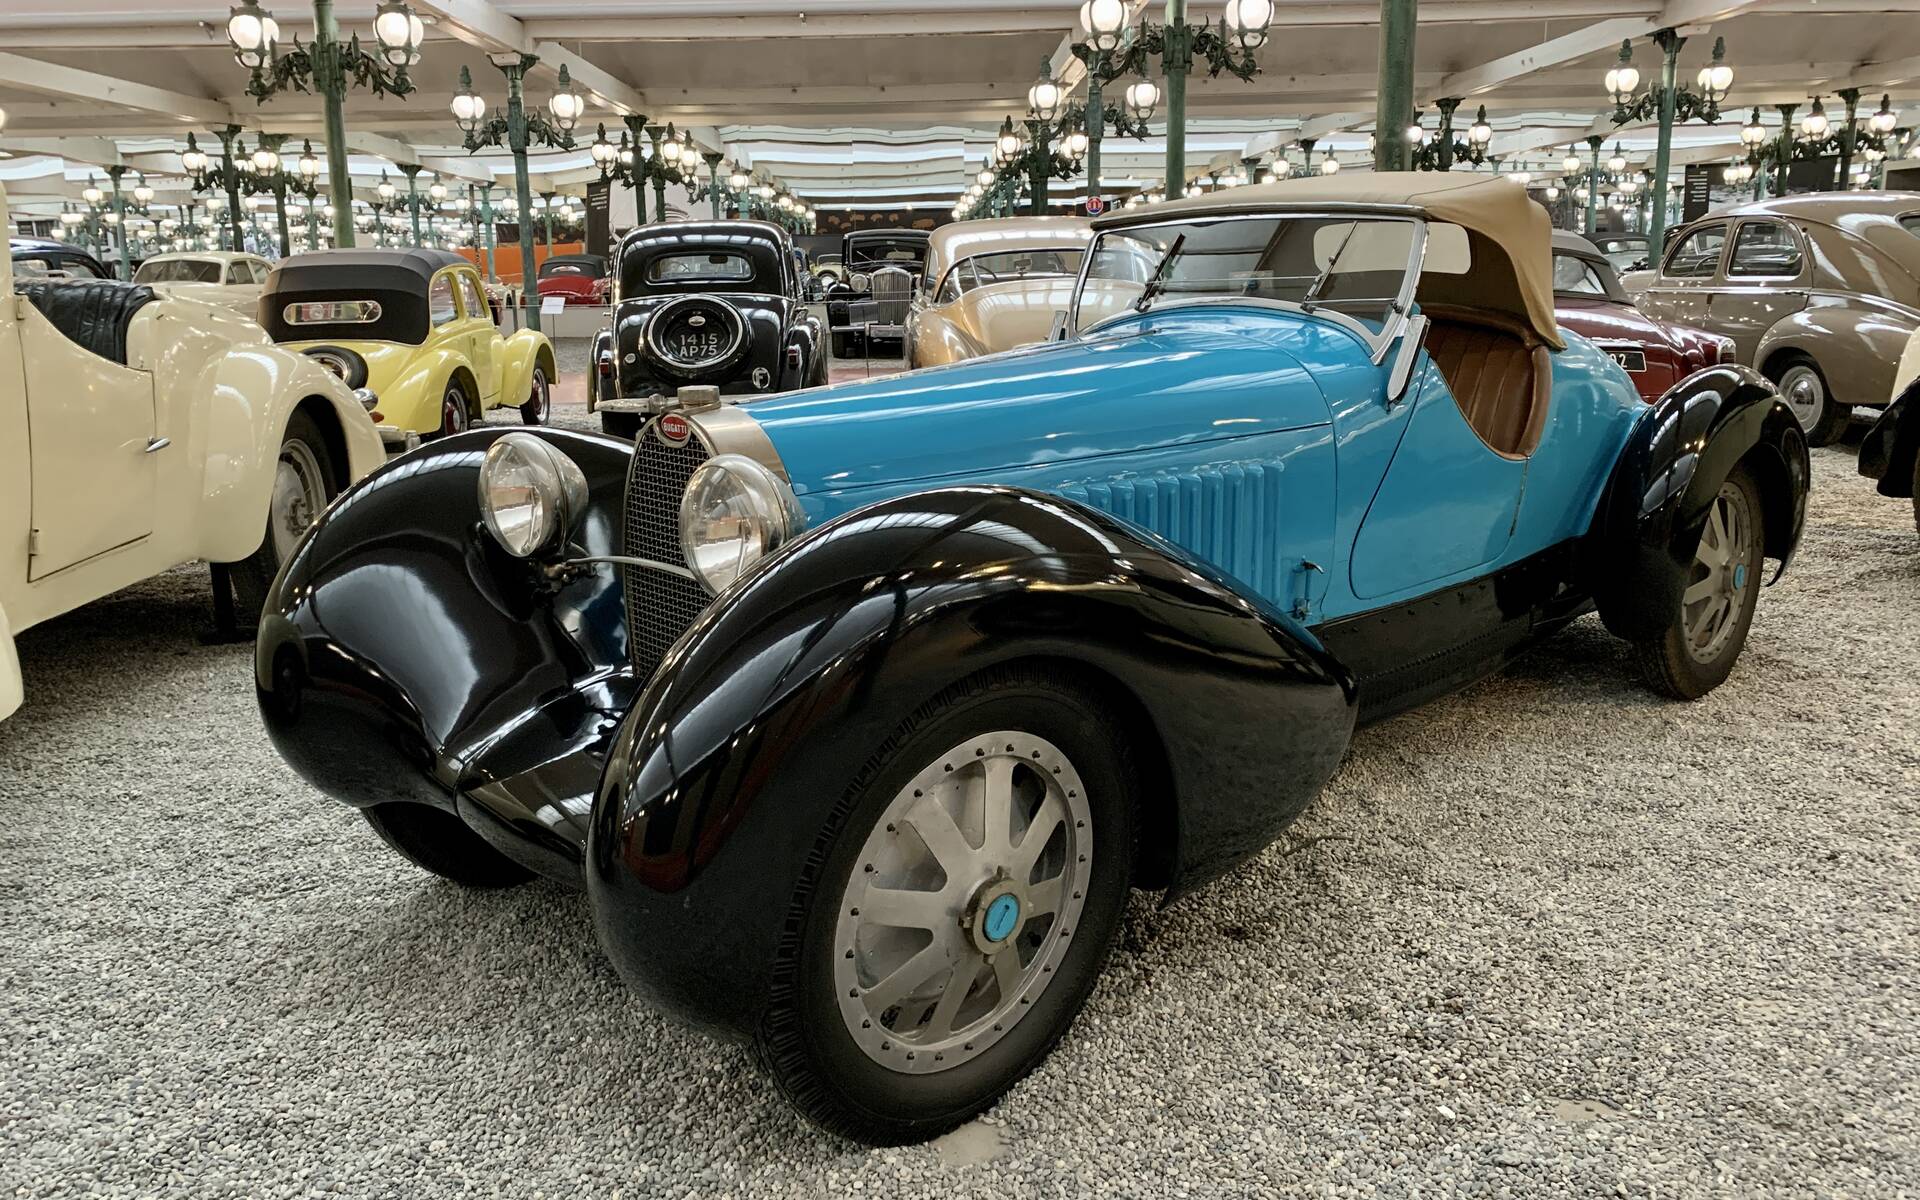 En photos : une centaine de Bugatti réunies dans un même musée 503051-en-photos-des-dizaines-de-bugatti-reunies-dans-un-meme-musee